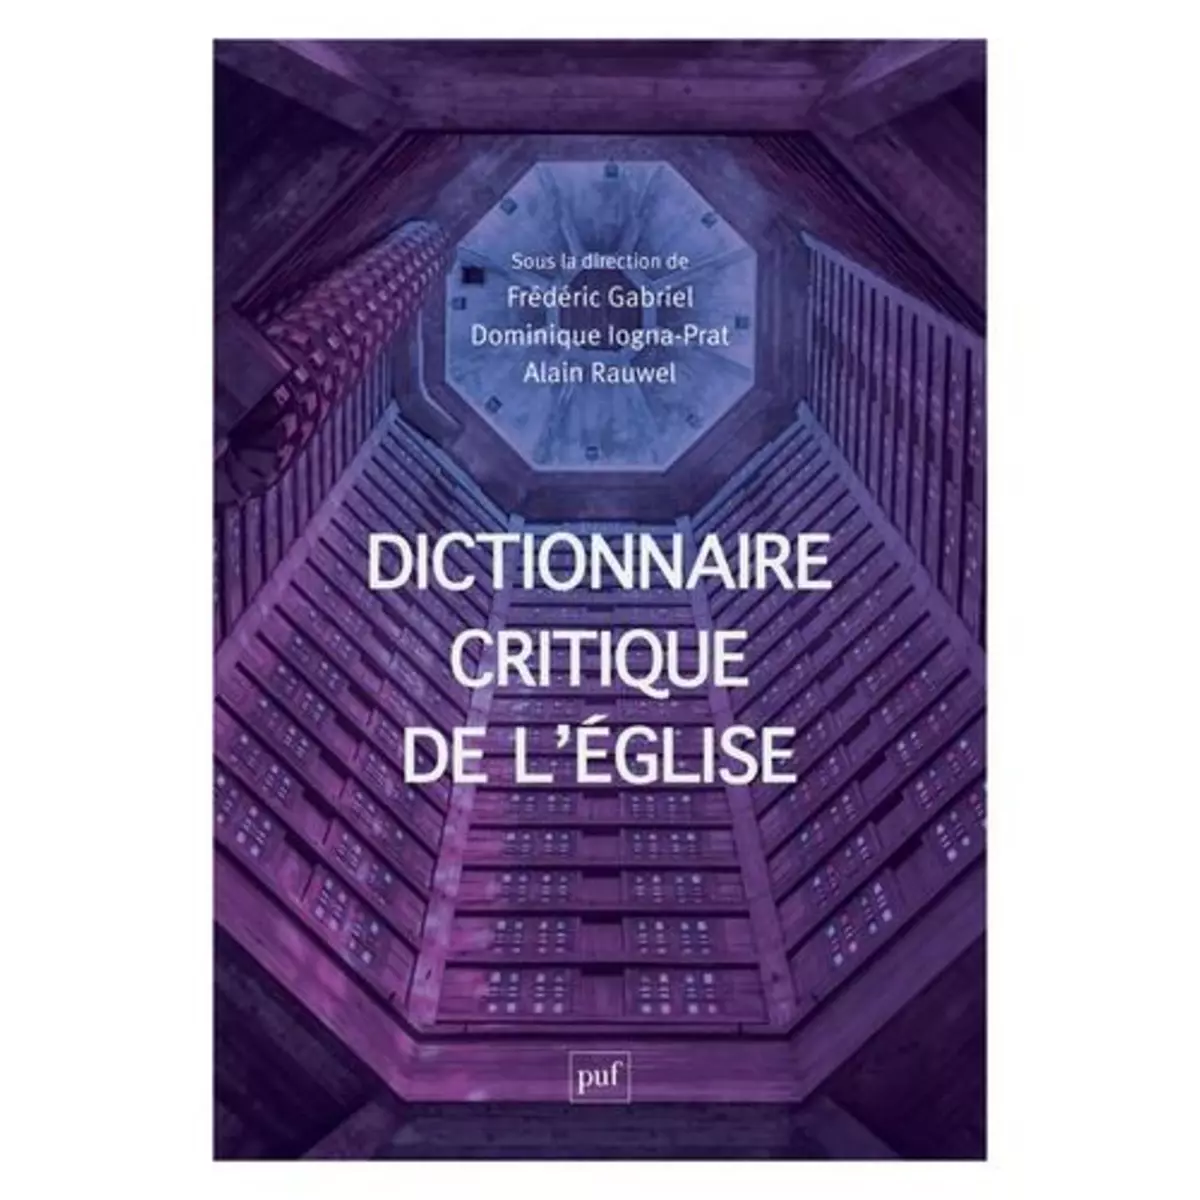  DICTIONNAIRE CRITIQUE DE L'EGLISE. NOTIONS ET DEBATS DE SCIENCES SOCIALES, Gabriel Frédéric